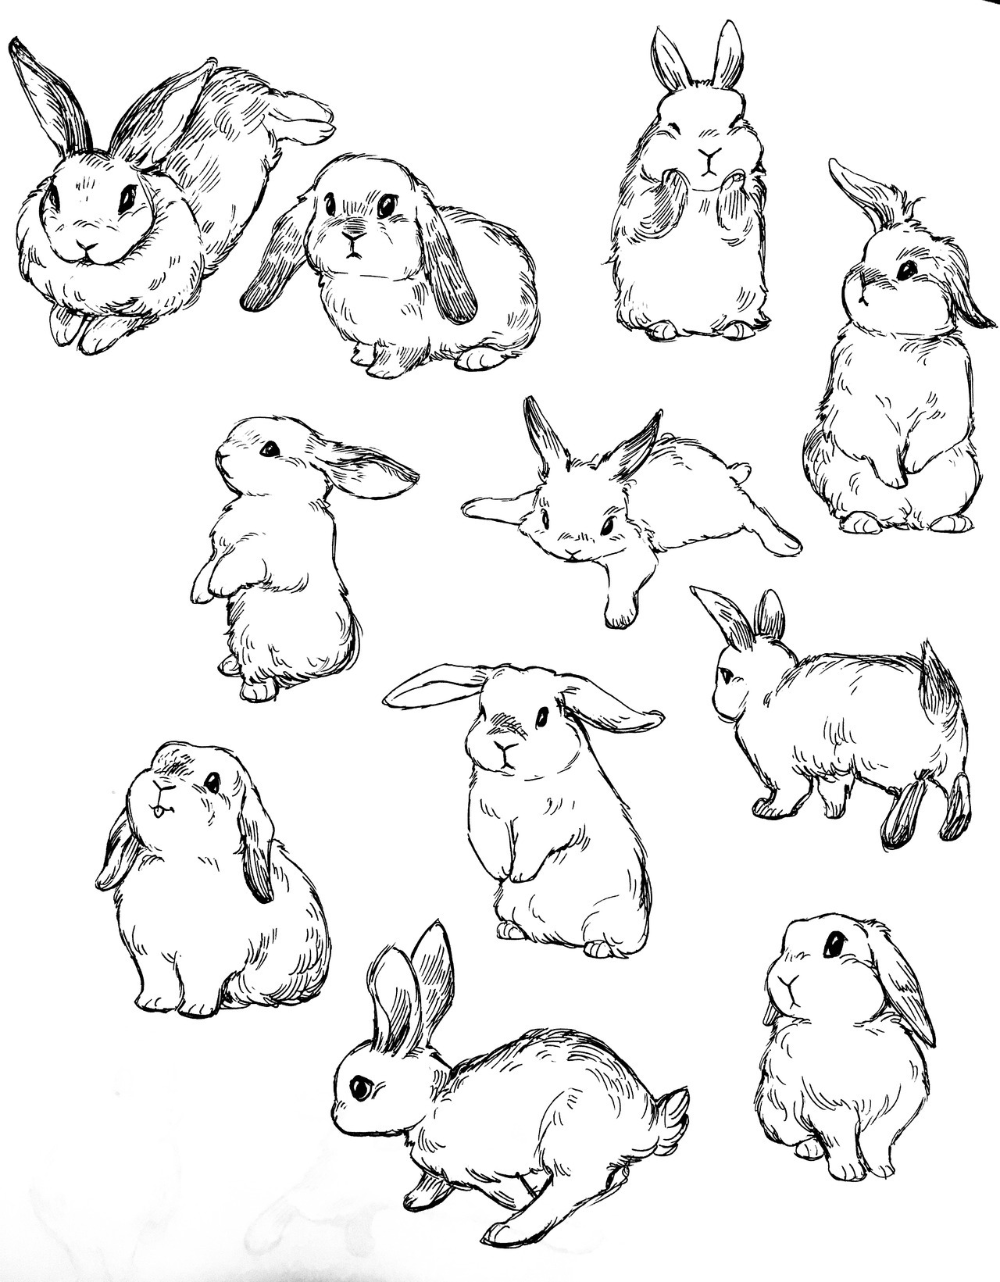 Кролик для срисовки